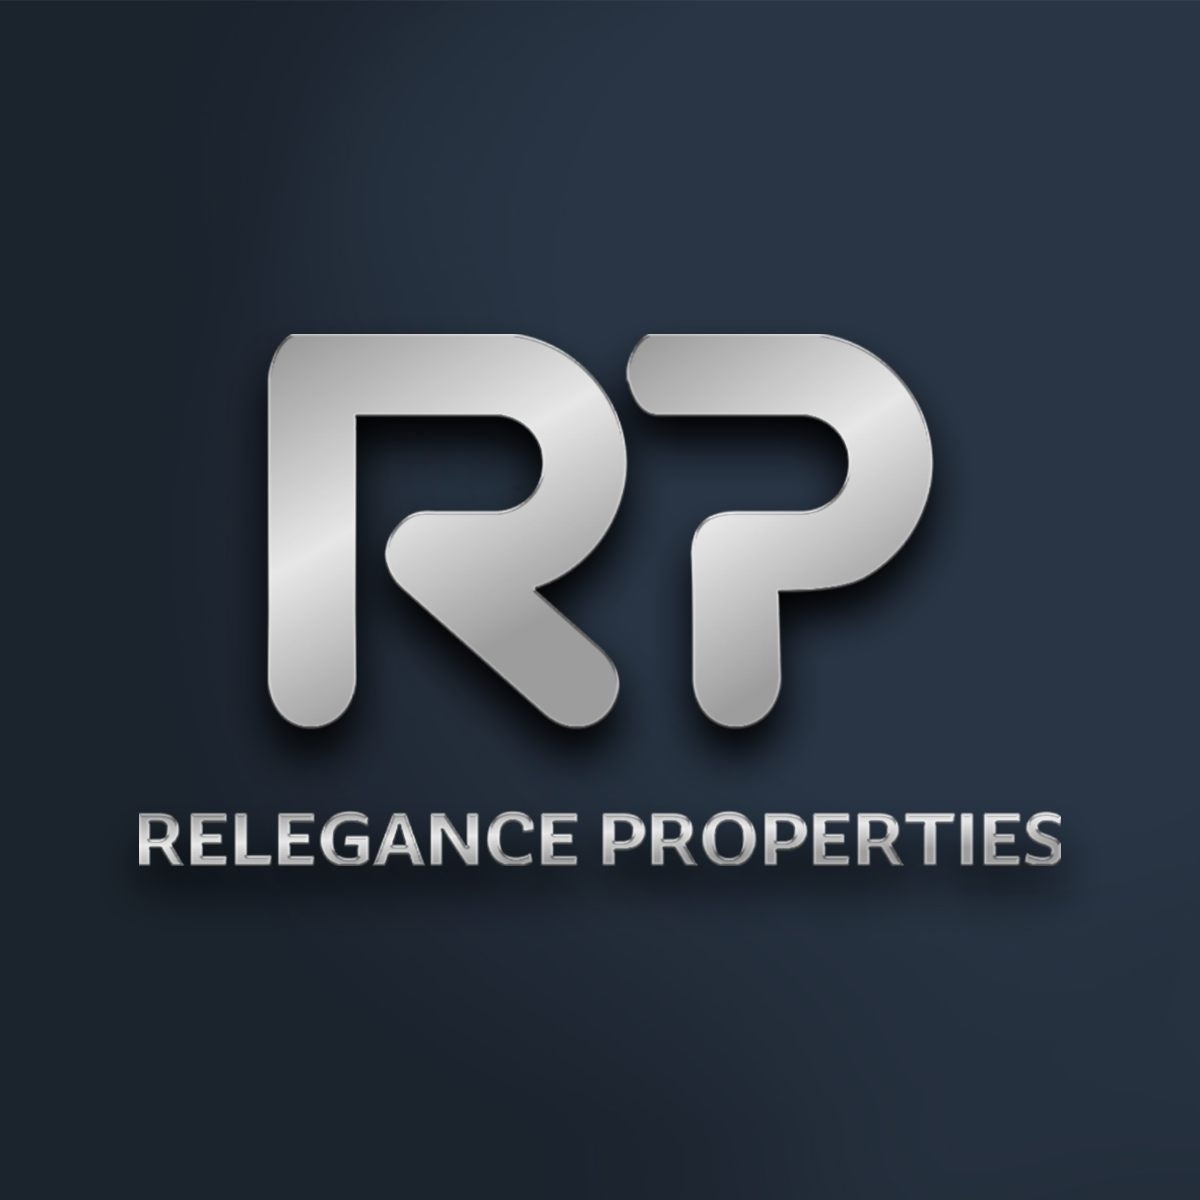 Relegance Properties